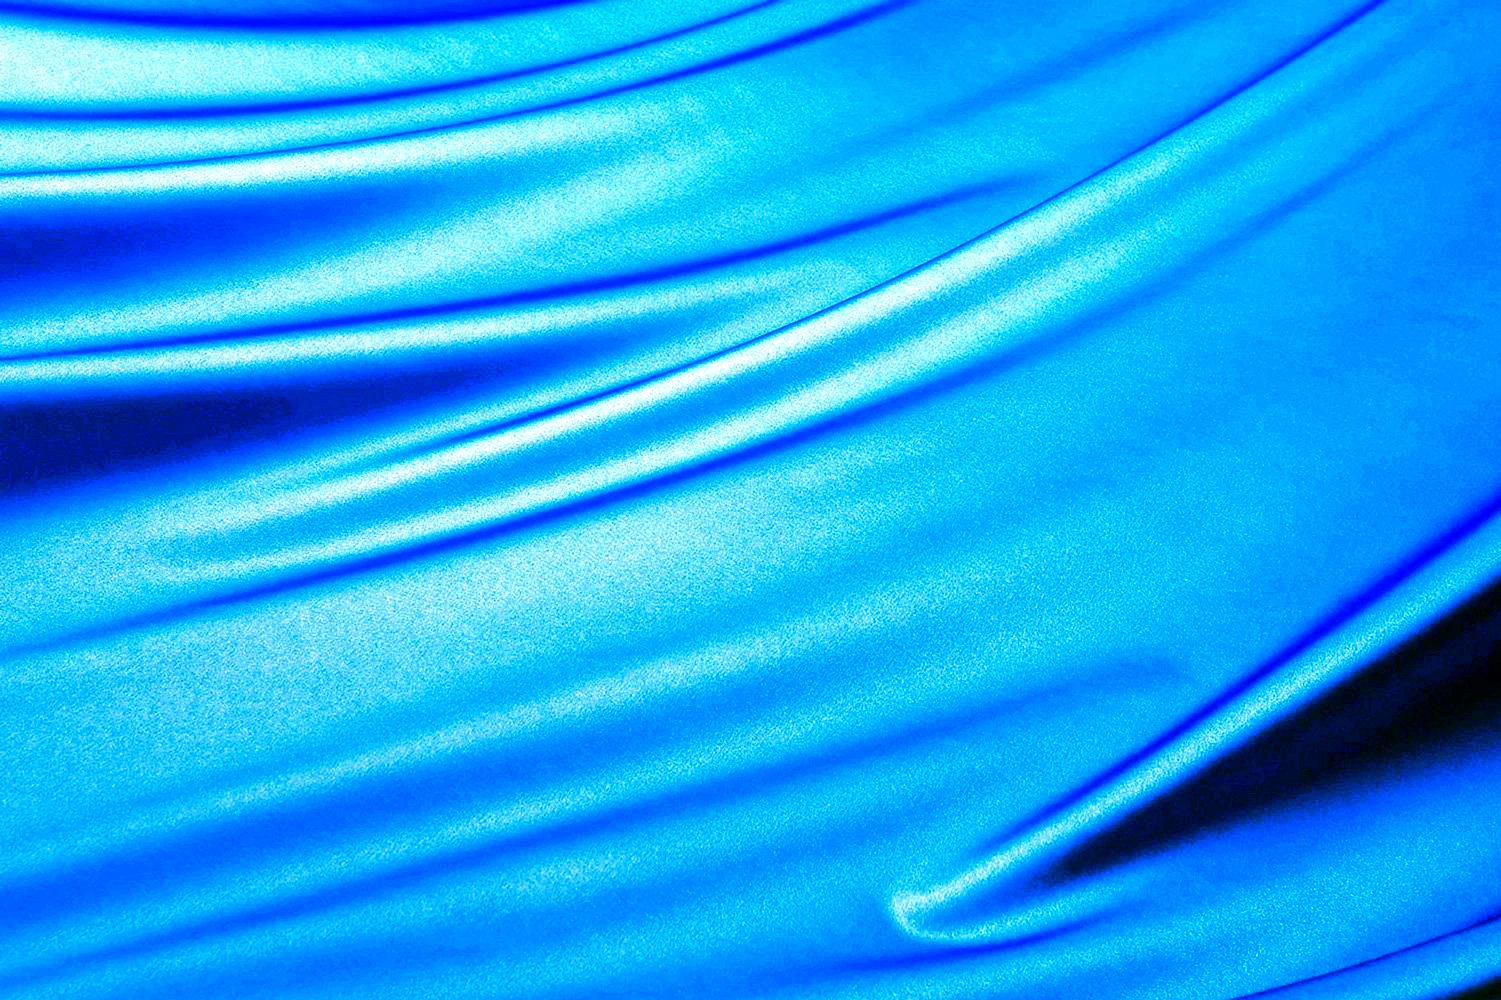 Голубая ткань